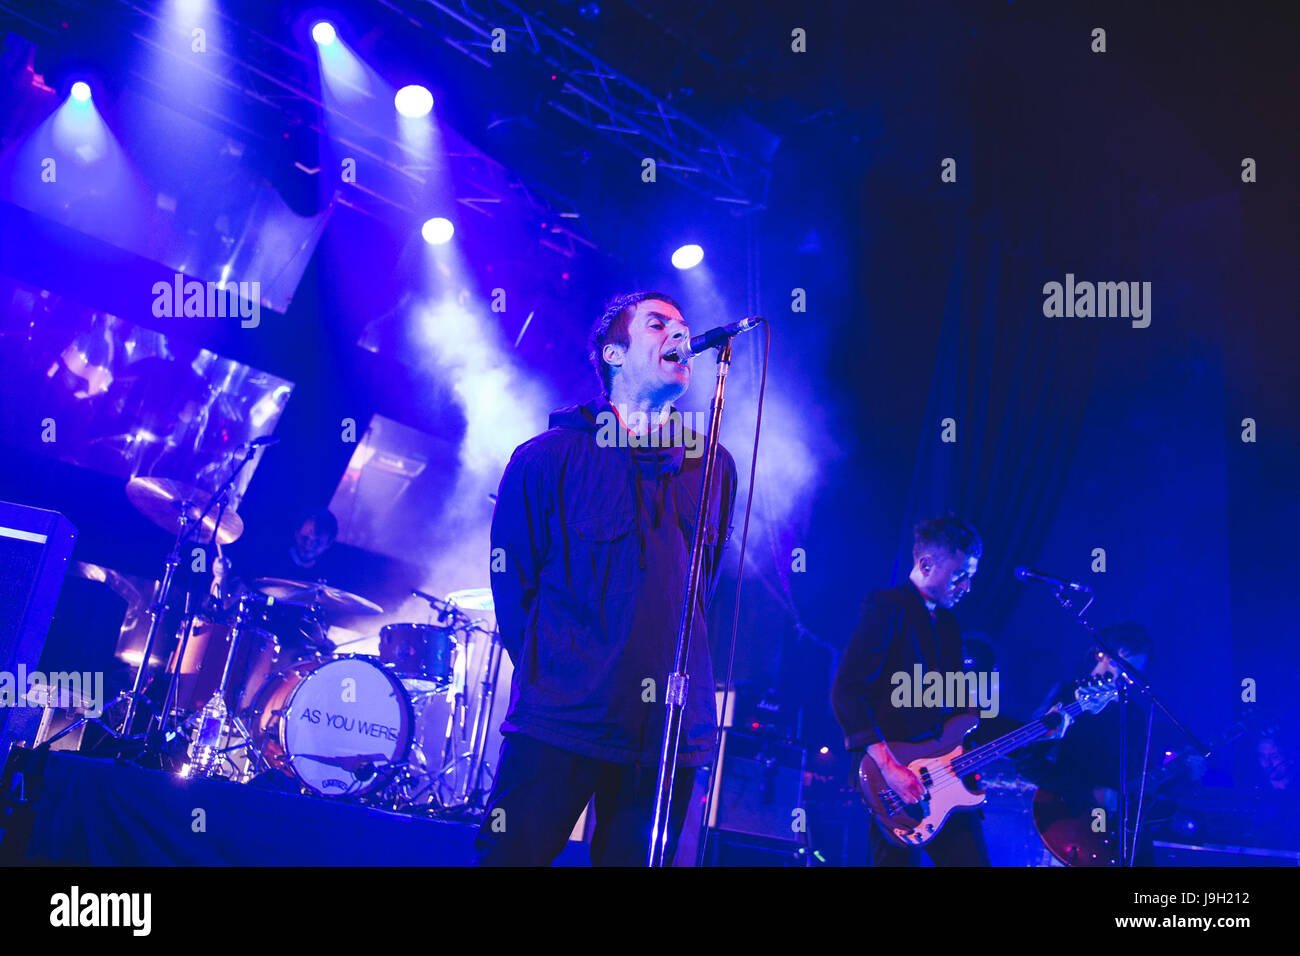 Londres, Royaume-Uni. 1er juin 2017. Ex-chanteur et leader du groupe Oasis, Liam Gallagher, effectue un spectacle à guichets fermés à l'Electric Brixton à Londres, 2017, après la sortie de son premier single "mur de verre' Credit : Myles Wright/ZUMA/Alamy Fil Live News Banque D'Images